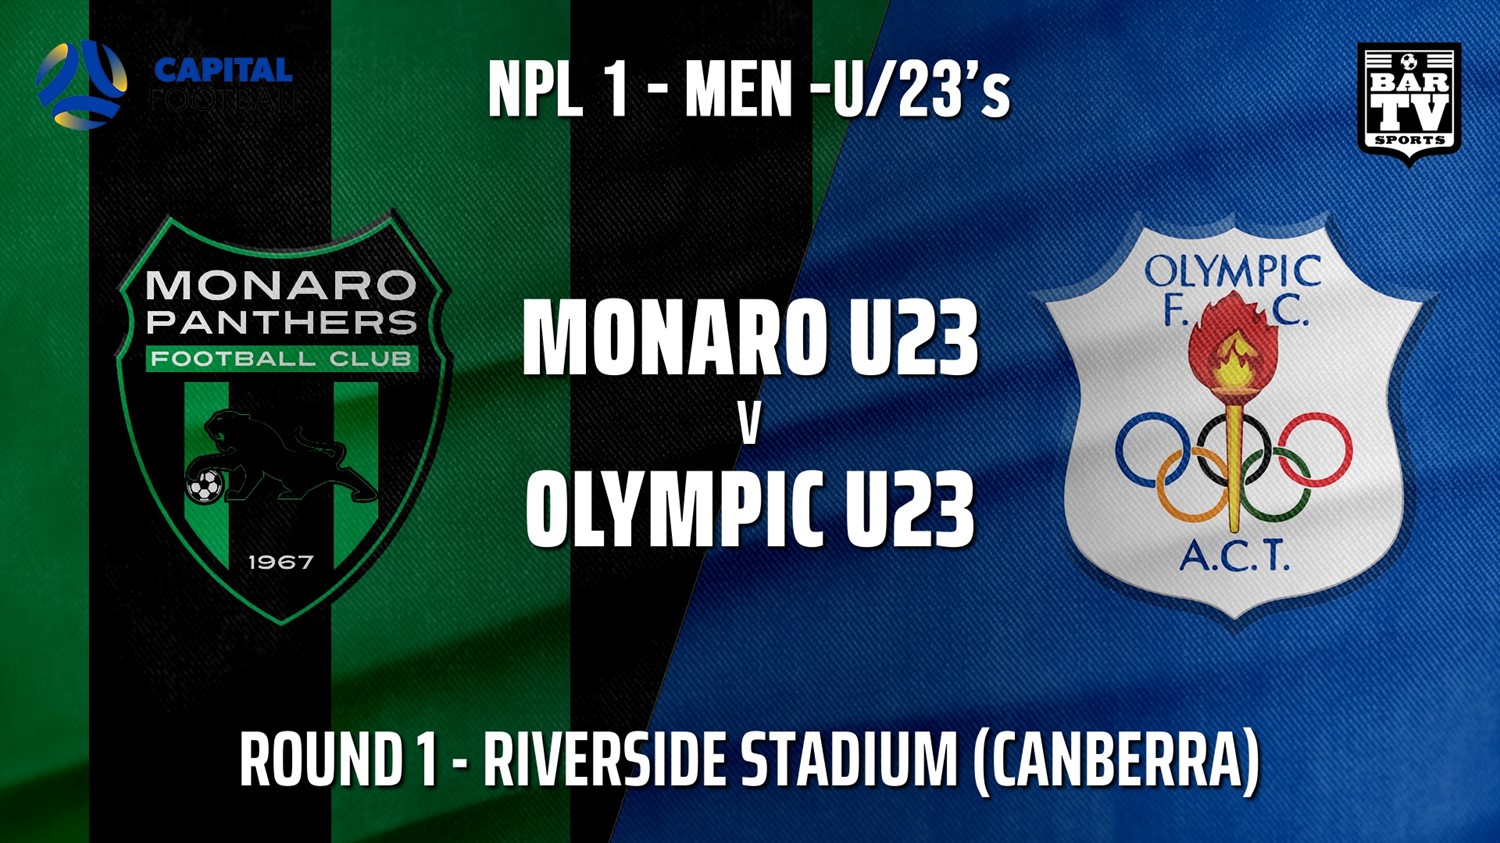 NPL1 Men - U23 - Capital Football  Round 1 - Monaro Panthers U23 v Canberra Olympic U23 Minigame Slate Image